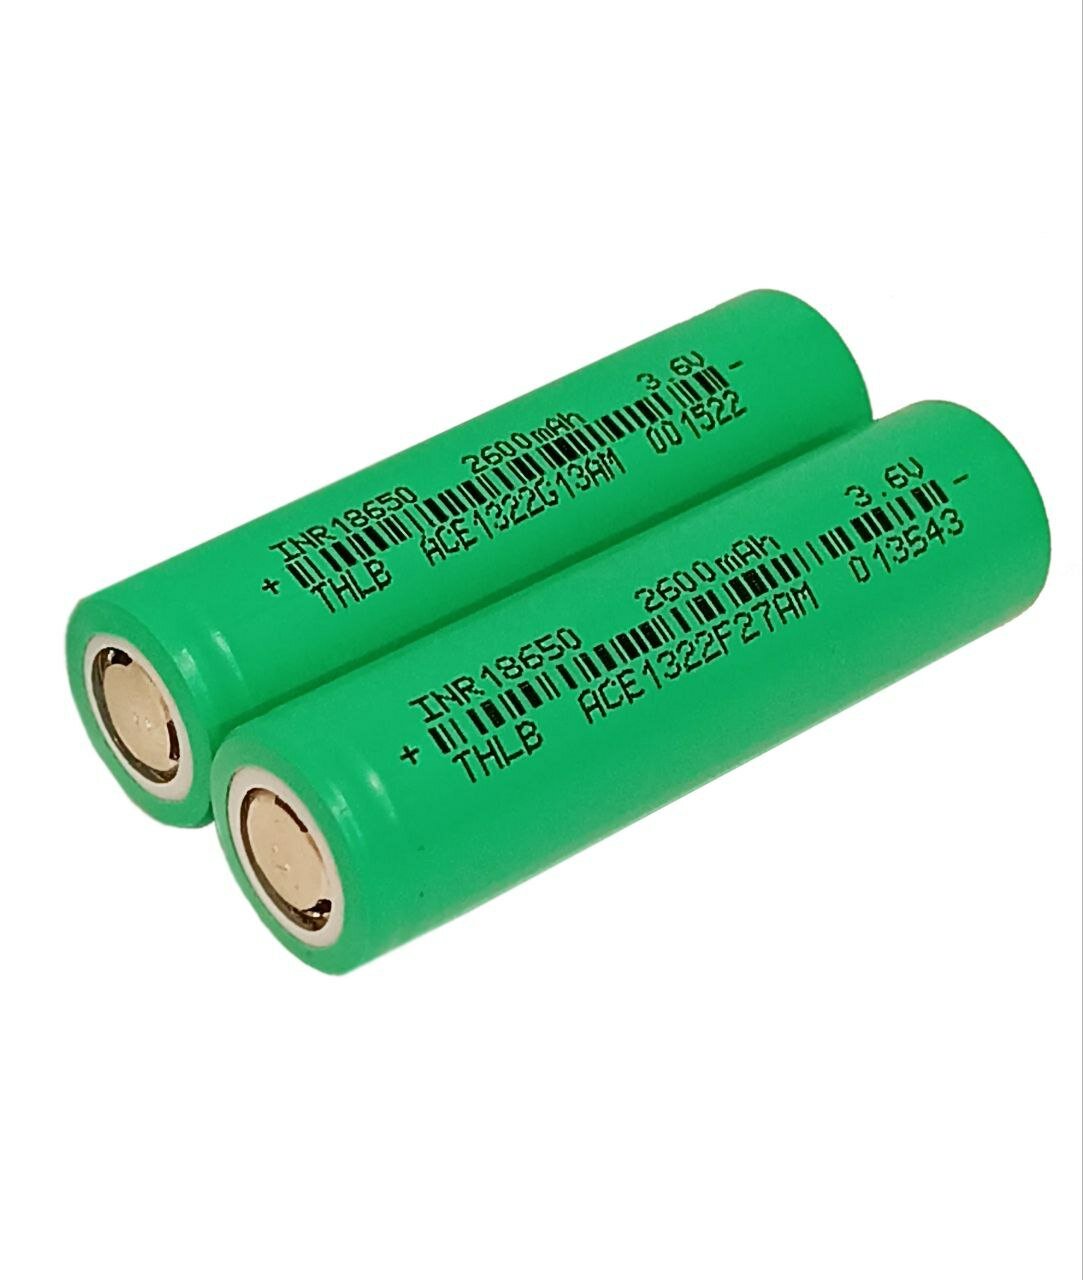 Аккумуляторы THLB INR 18650 Li-ion высокотоковые, емкость 2500mAh 3.6V 2шт.